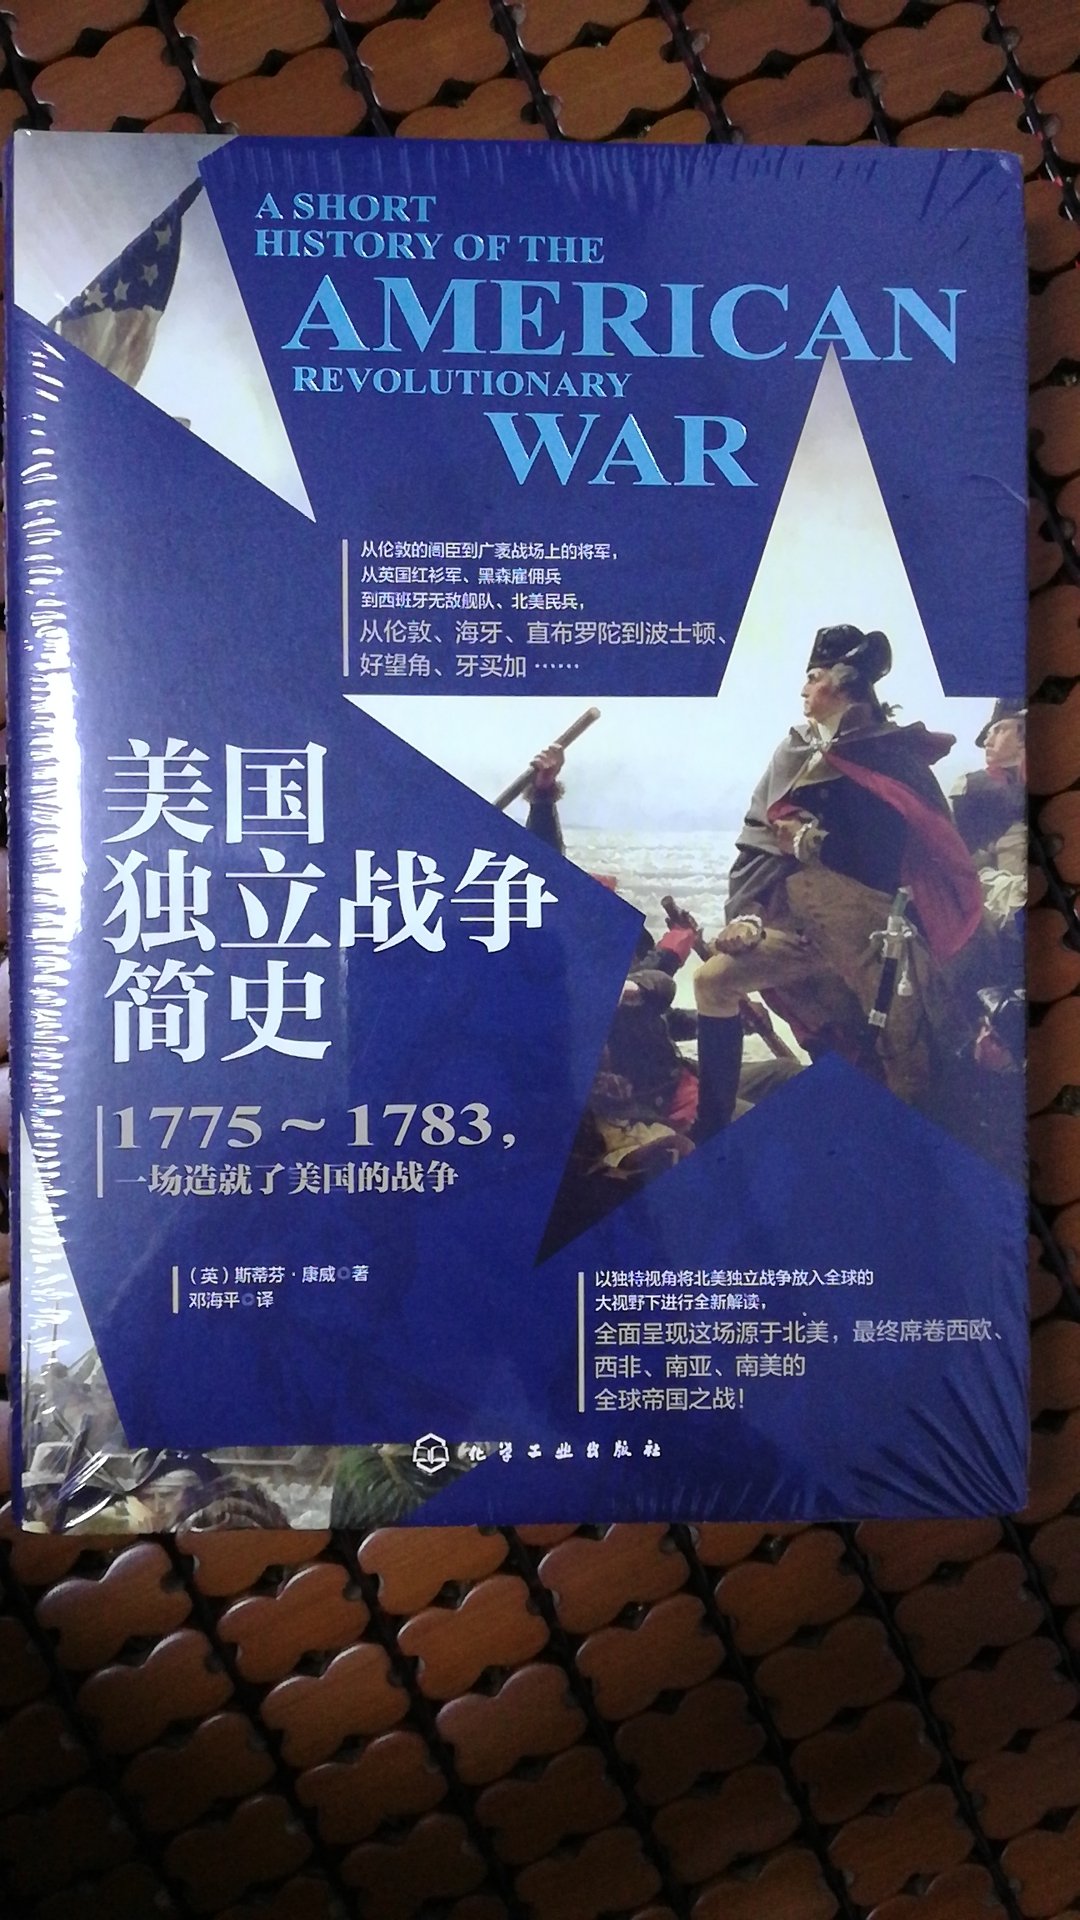 好书，对美国独立战争的历史不是很了解，了解一下。